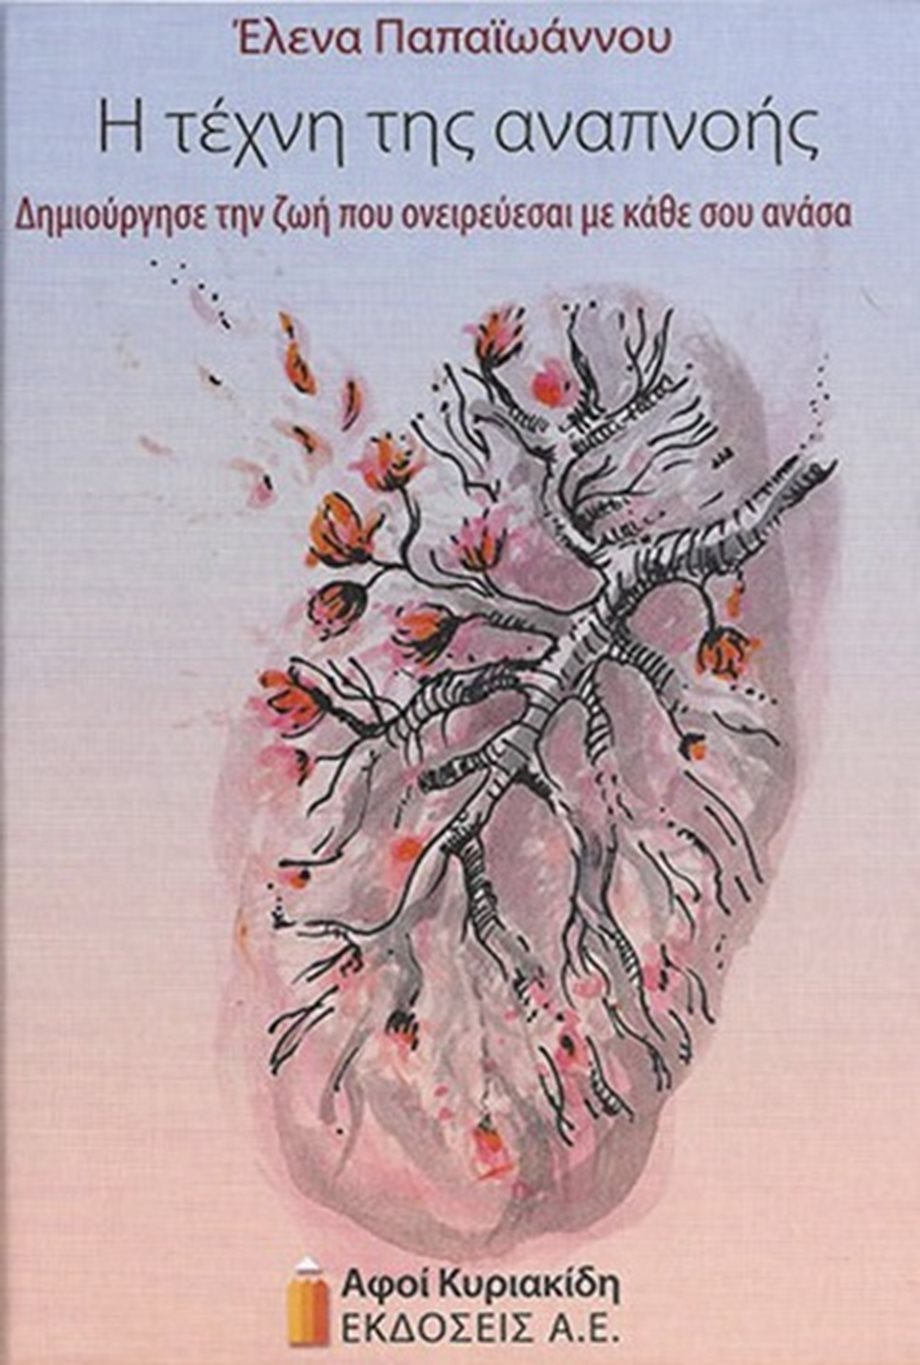 "Η Τέχνη της Αναπνοής" - Παρουσίαση του βιβλίου της Έλενας Παπαϊωάννου